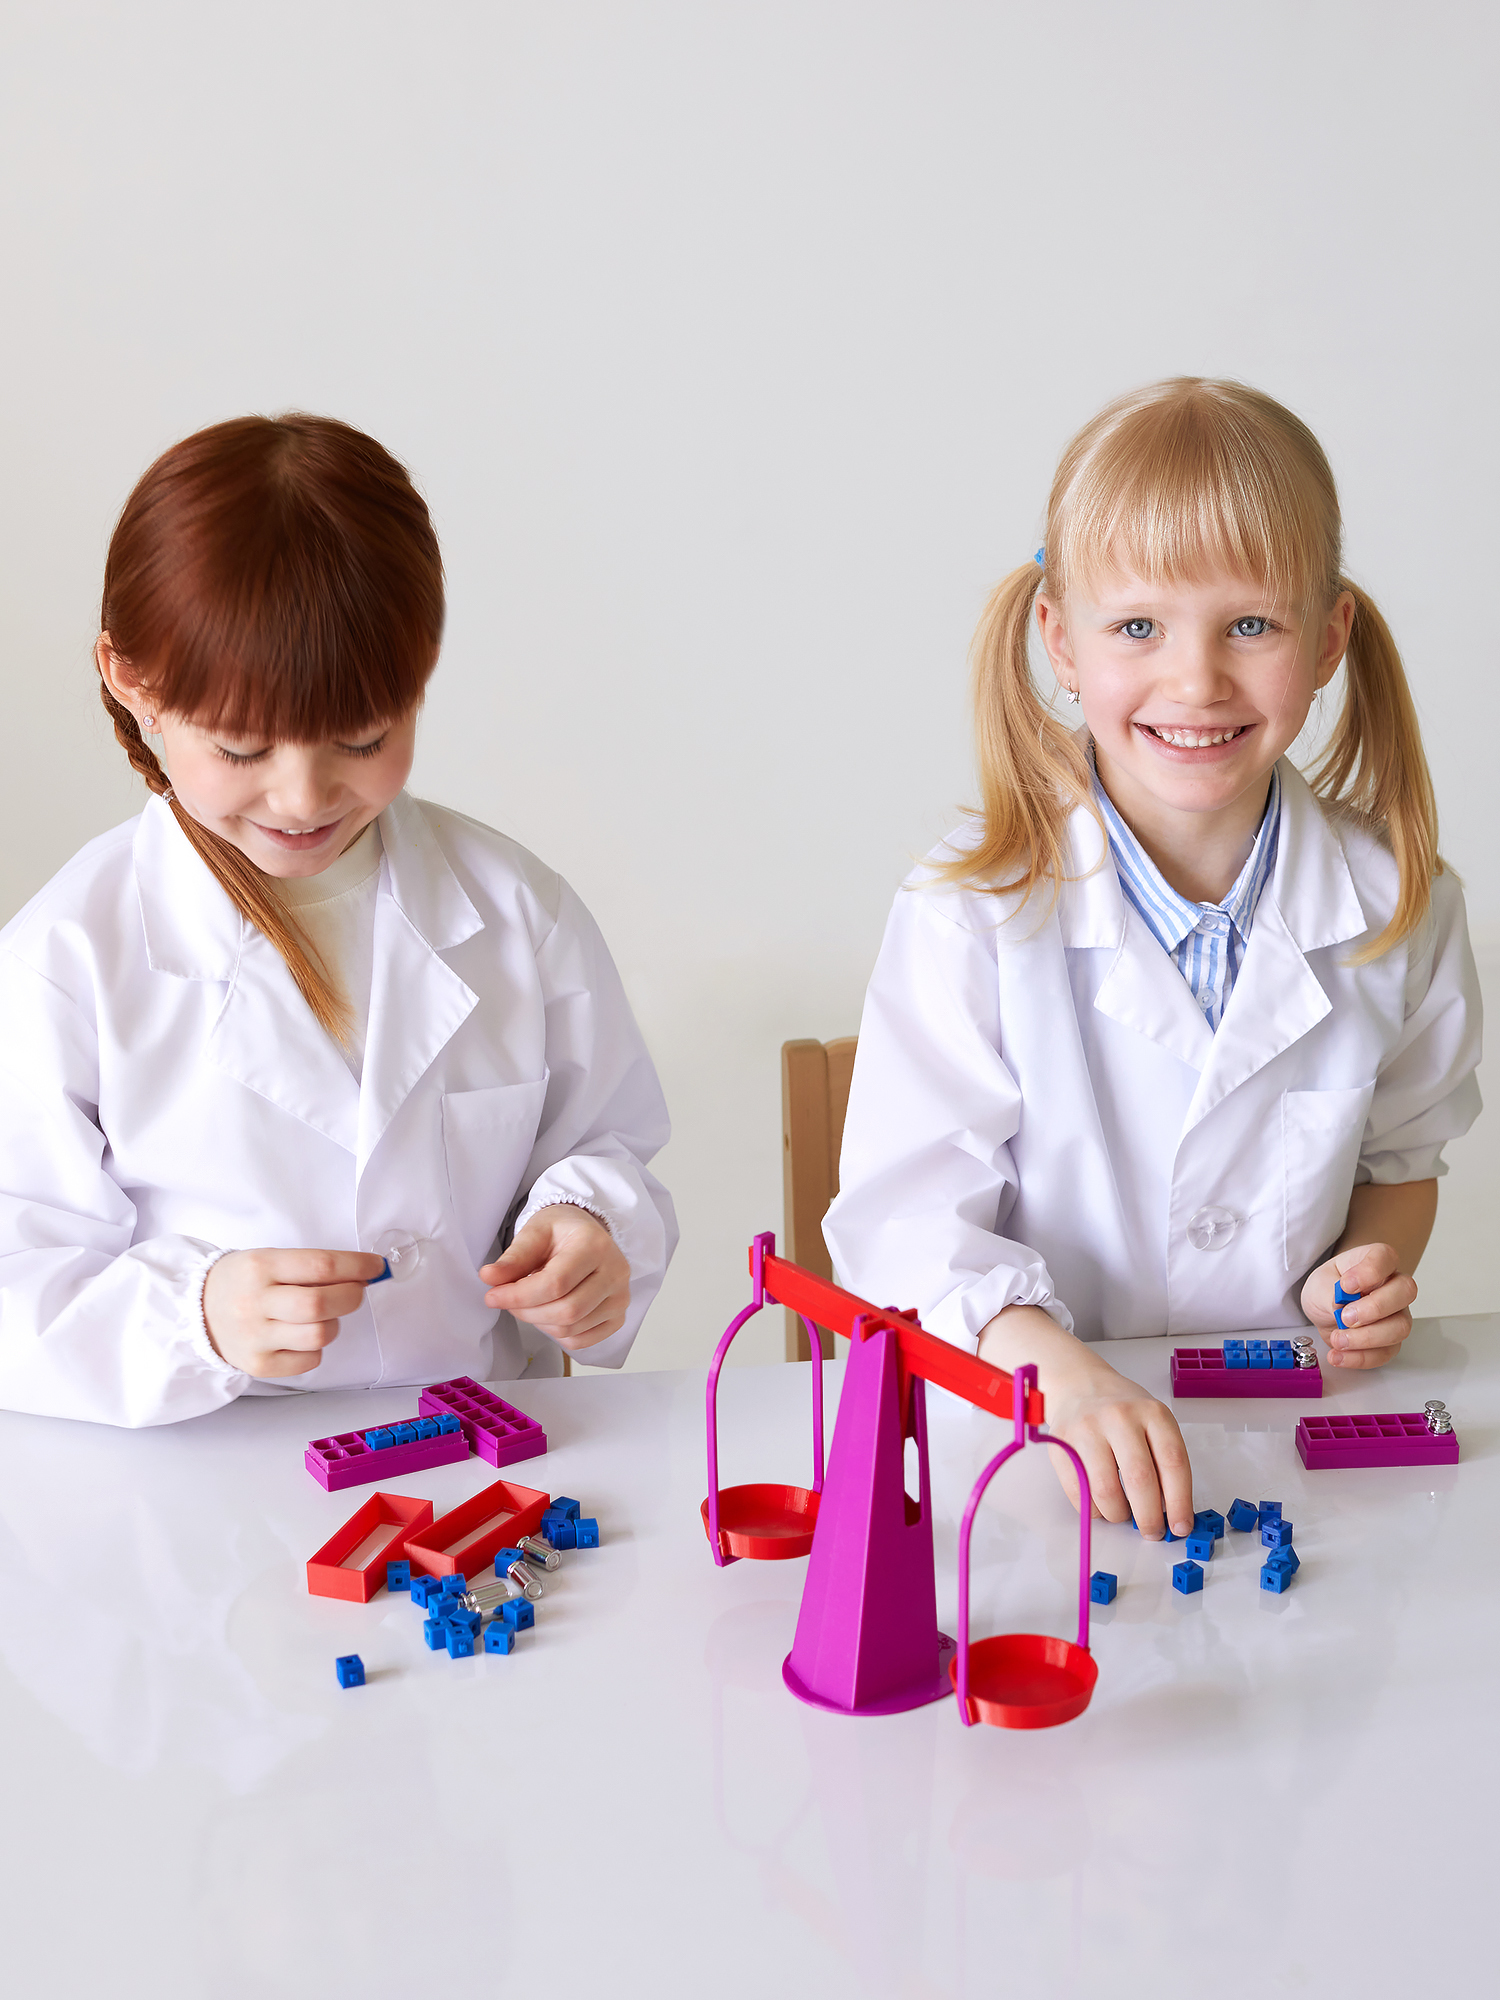 УМК для естественно-научного образования детей 5-7 лет / 2 мобильных стеллажа с оборудованием по 6 направлениям исследований